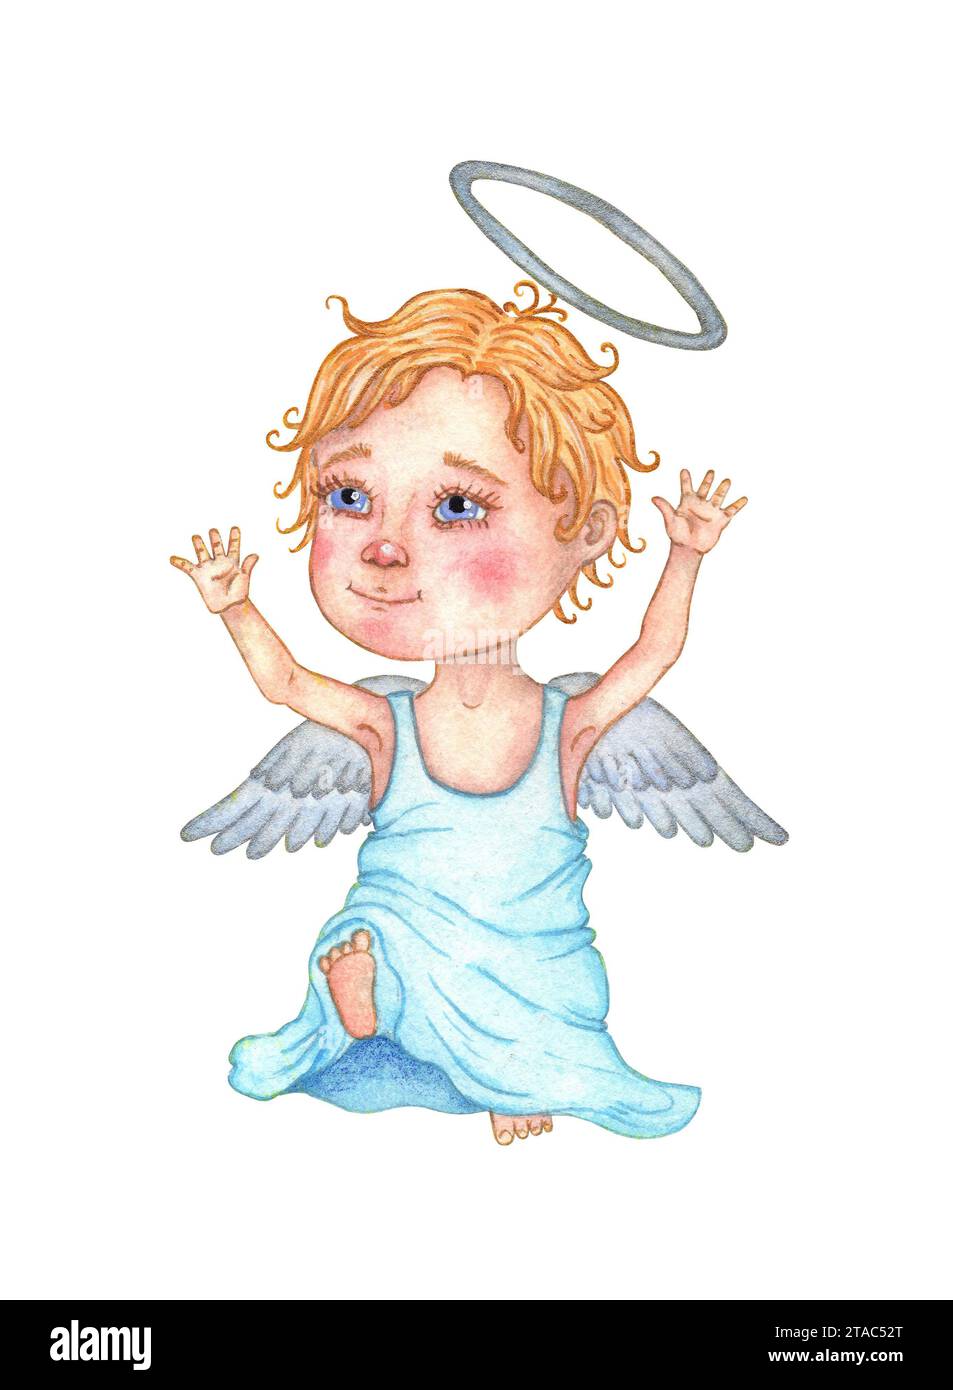 Illustration aquarelle d'un petit ange mignon dans une grande robe sur un fond isolé. Noël, Saint-Valentin. Concept de conception pour affiche, carte, b. Banque D'Images